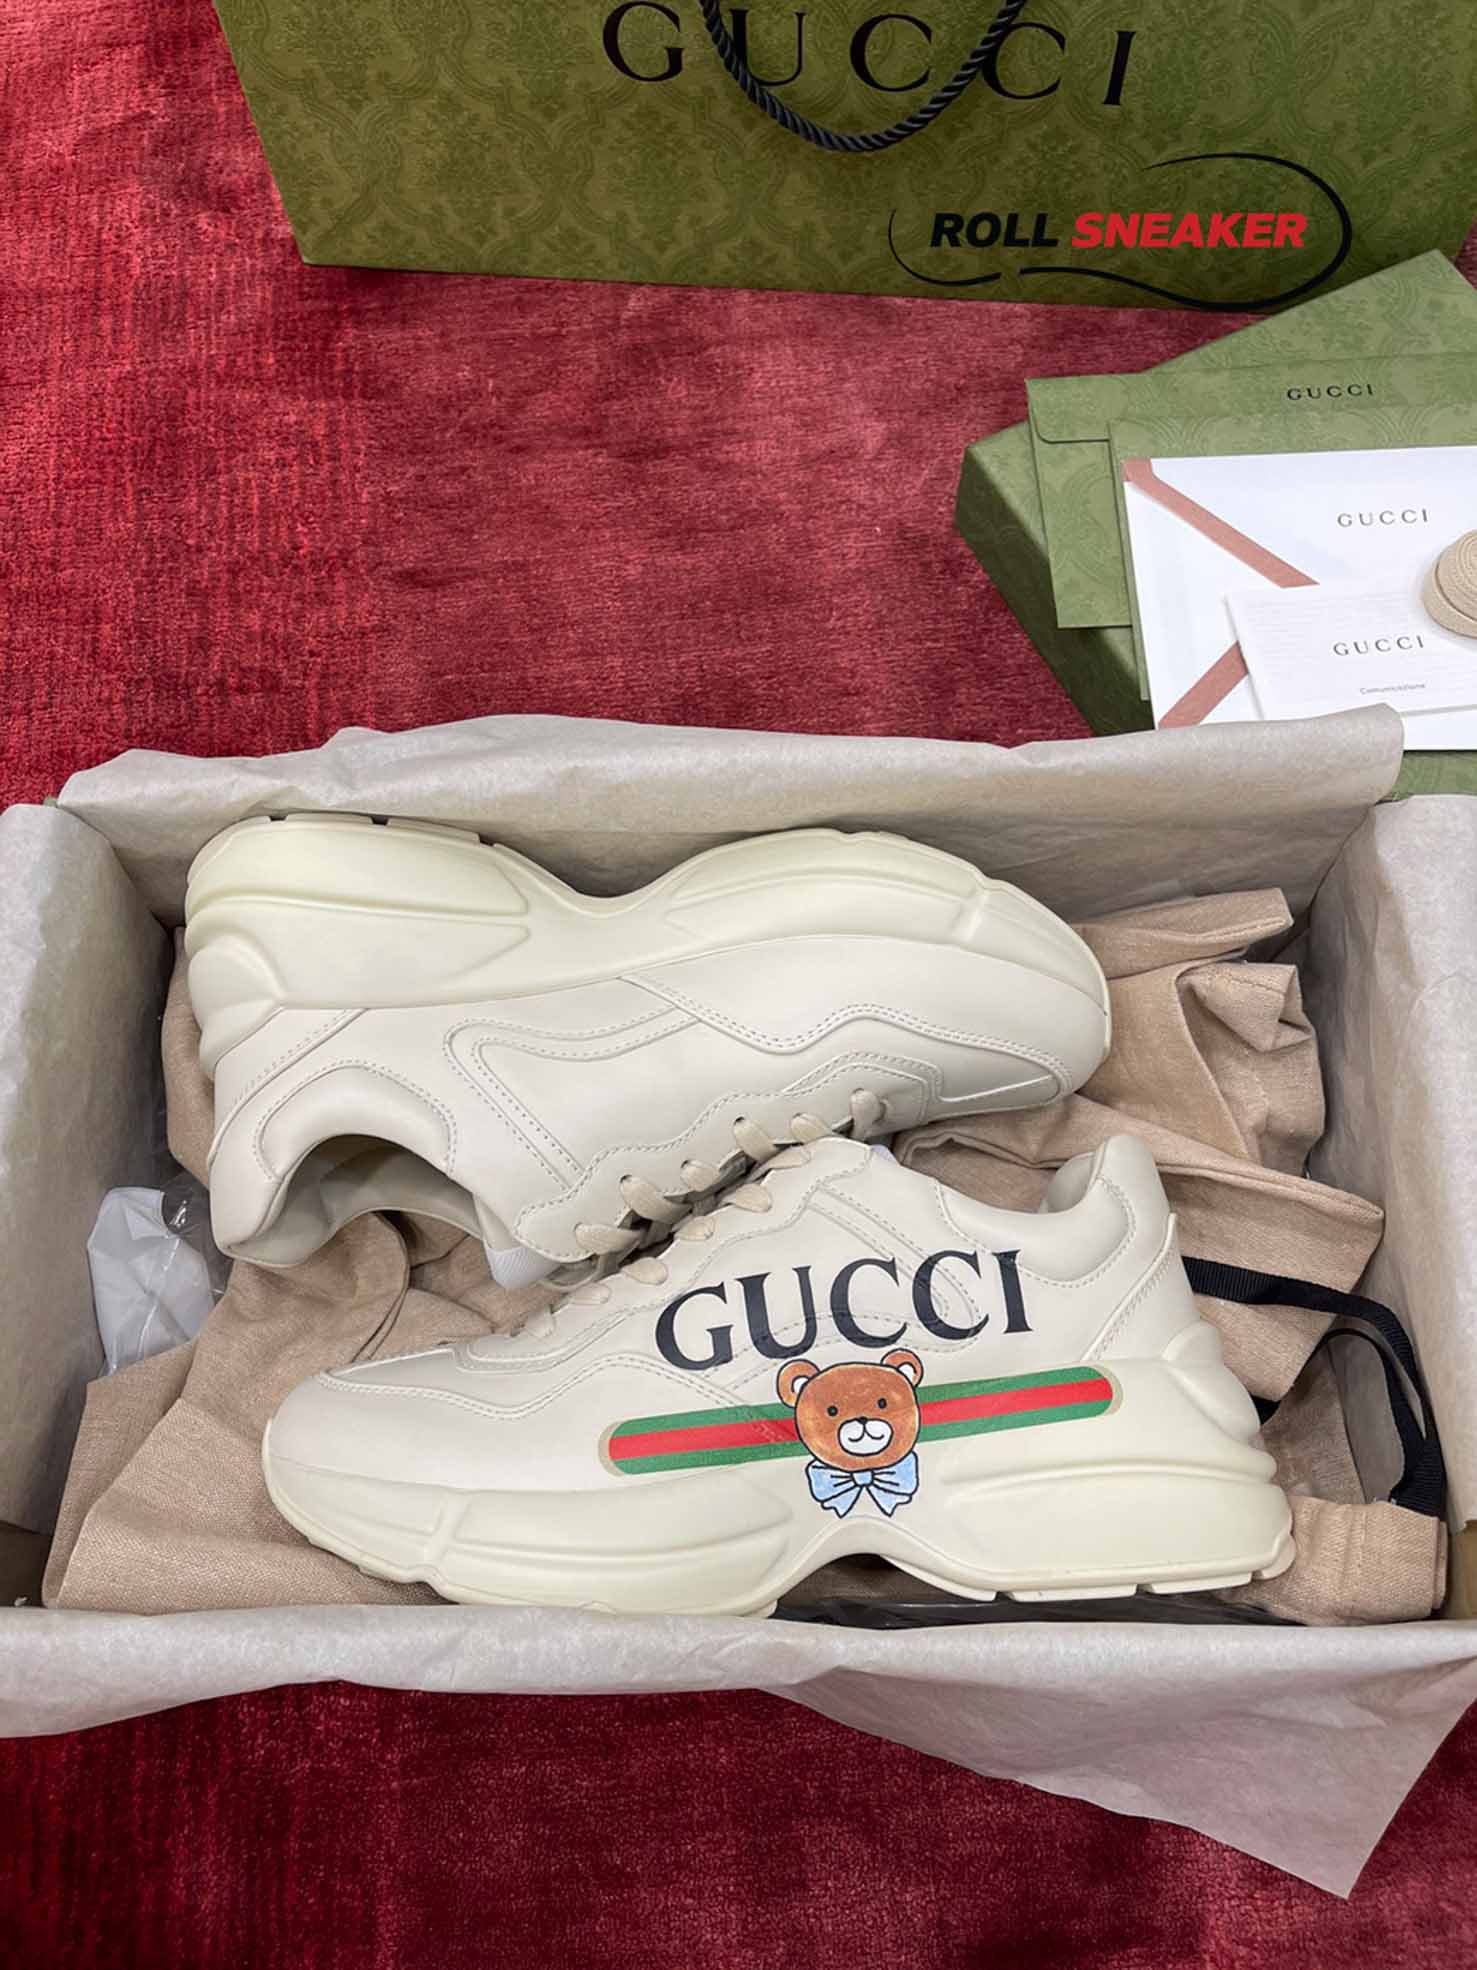 Gucci KAI x Gucci Rhyton Sneaker
